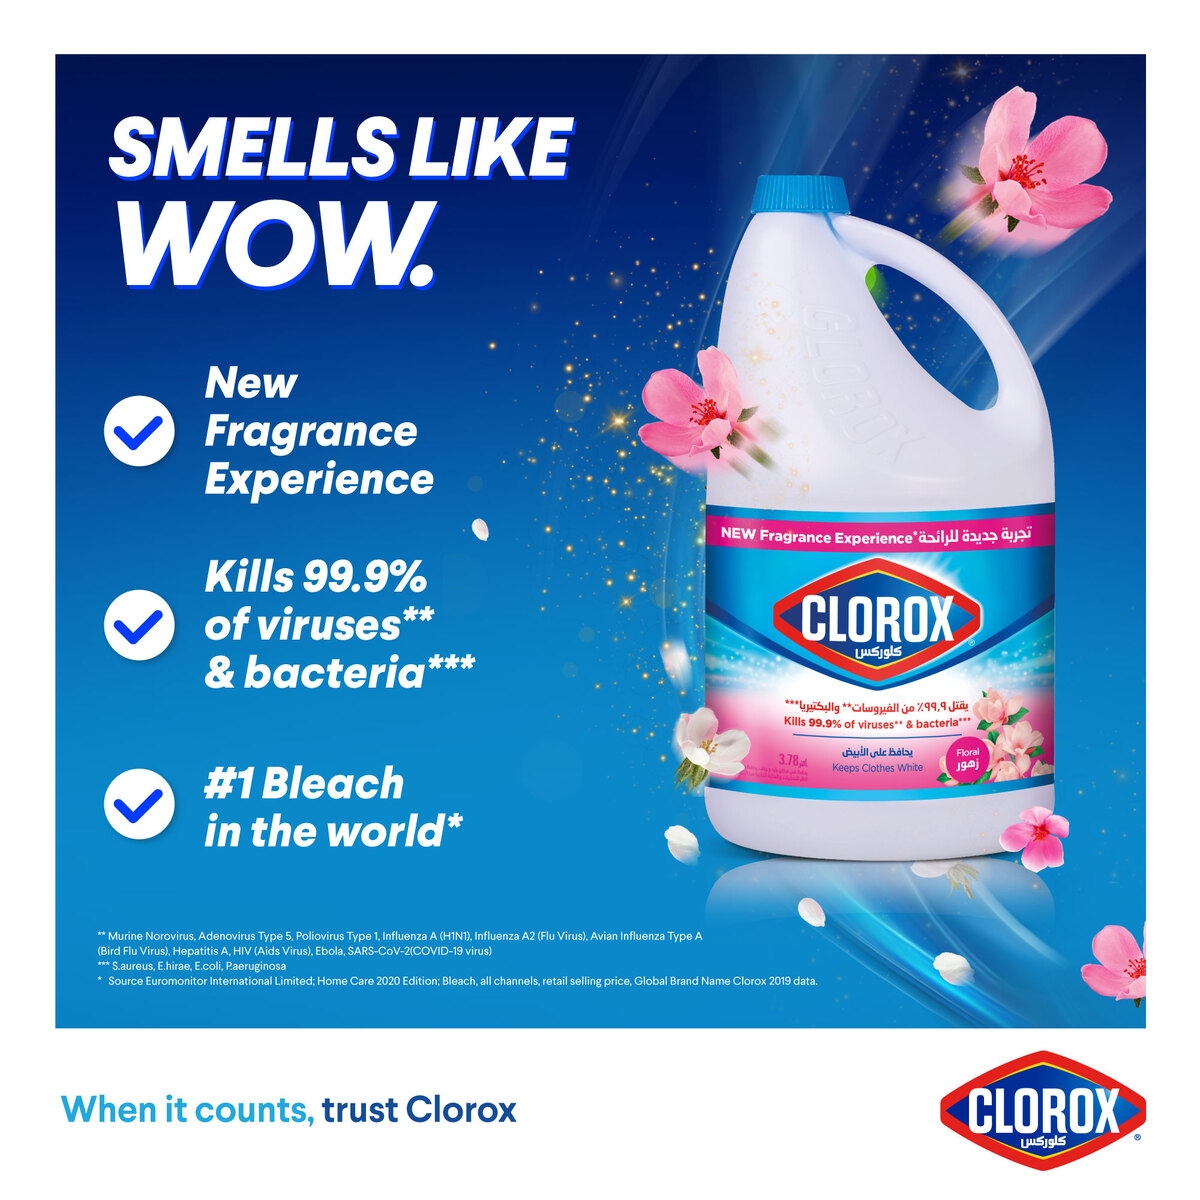 Clorox Liquid Bleach Floral Scent 3.78 Litres